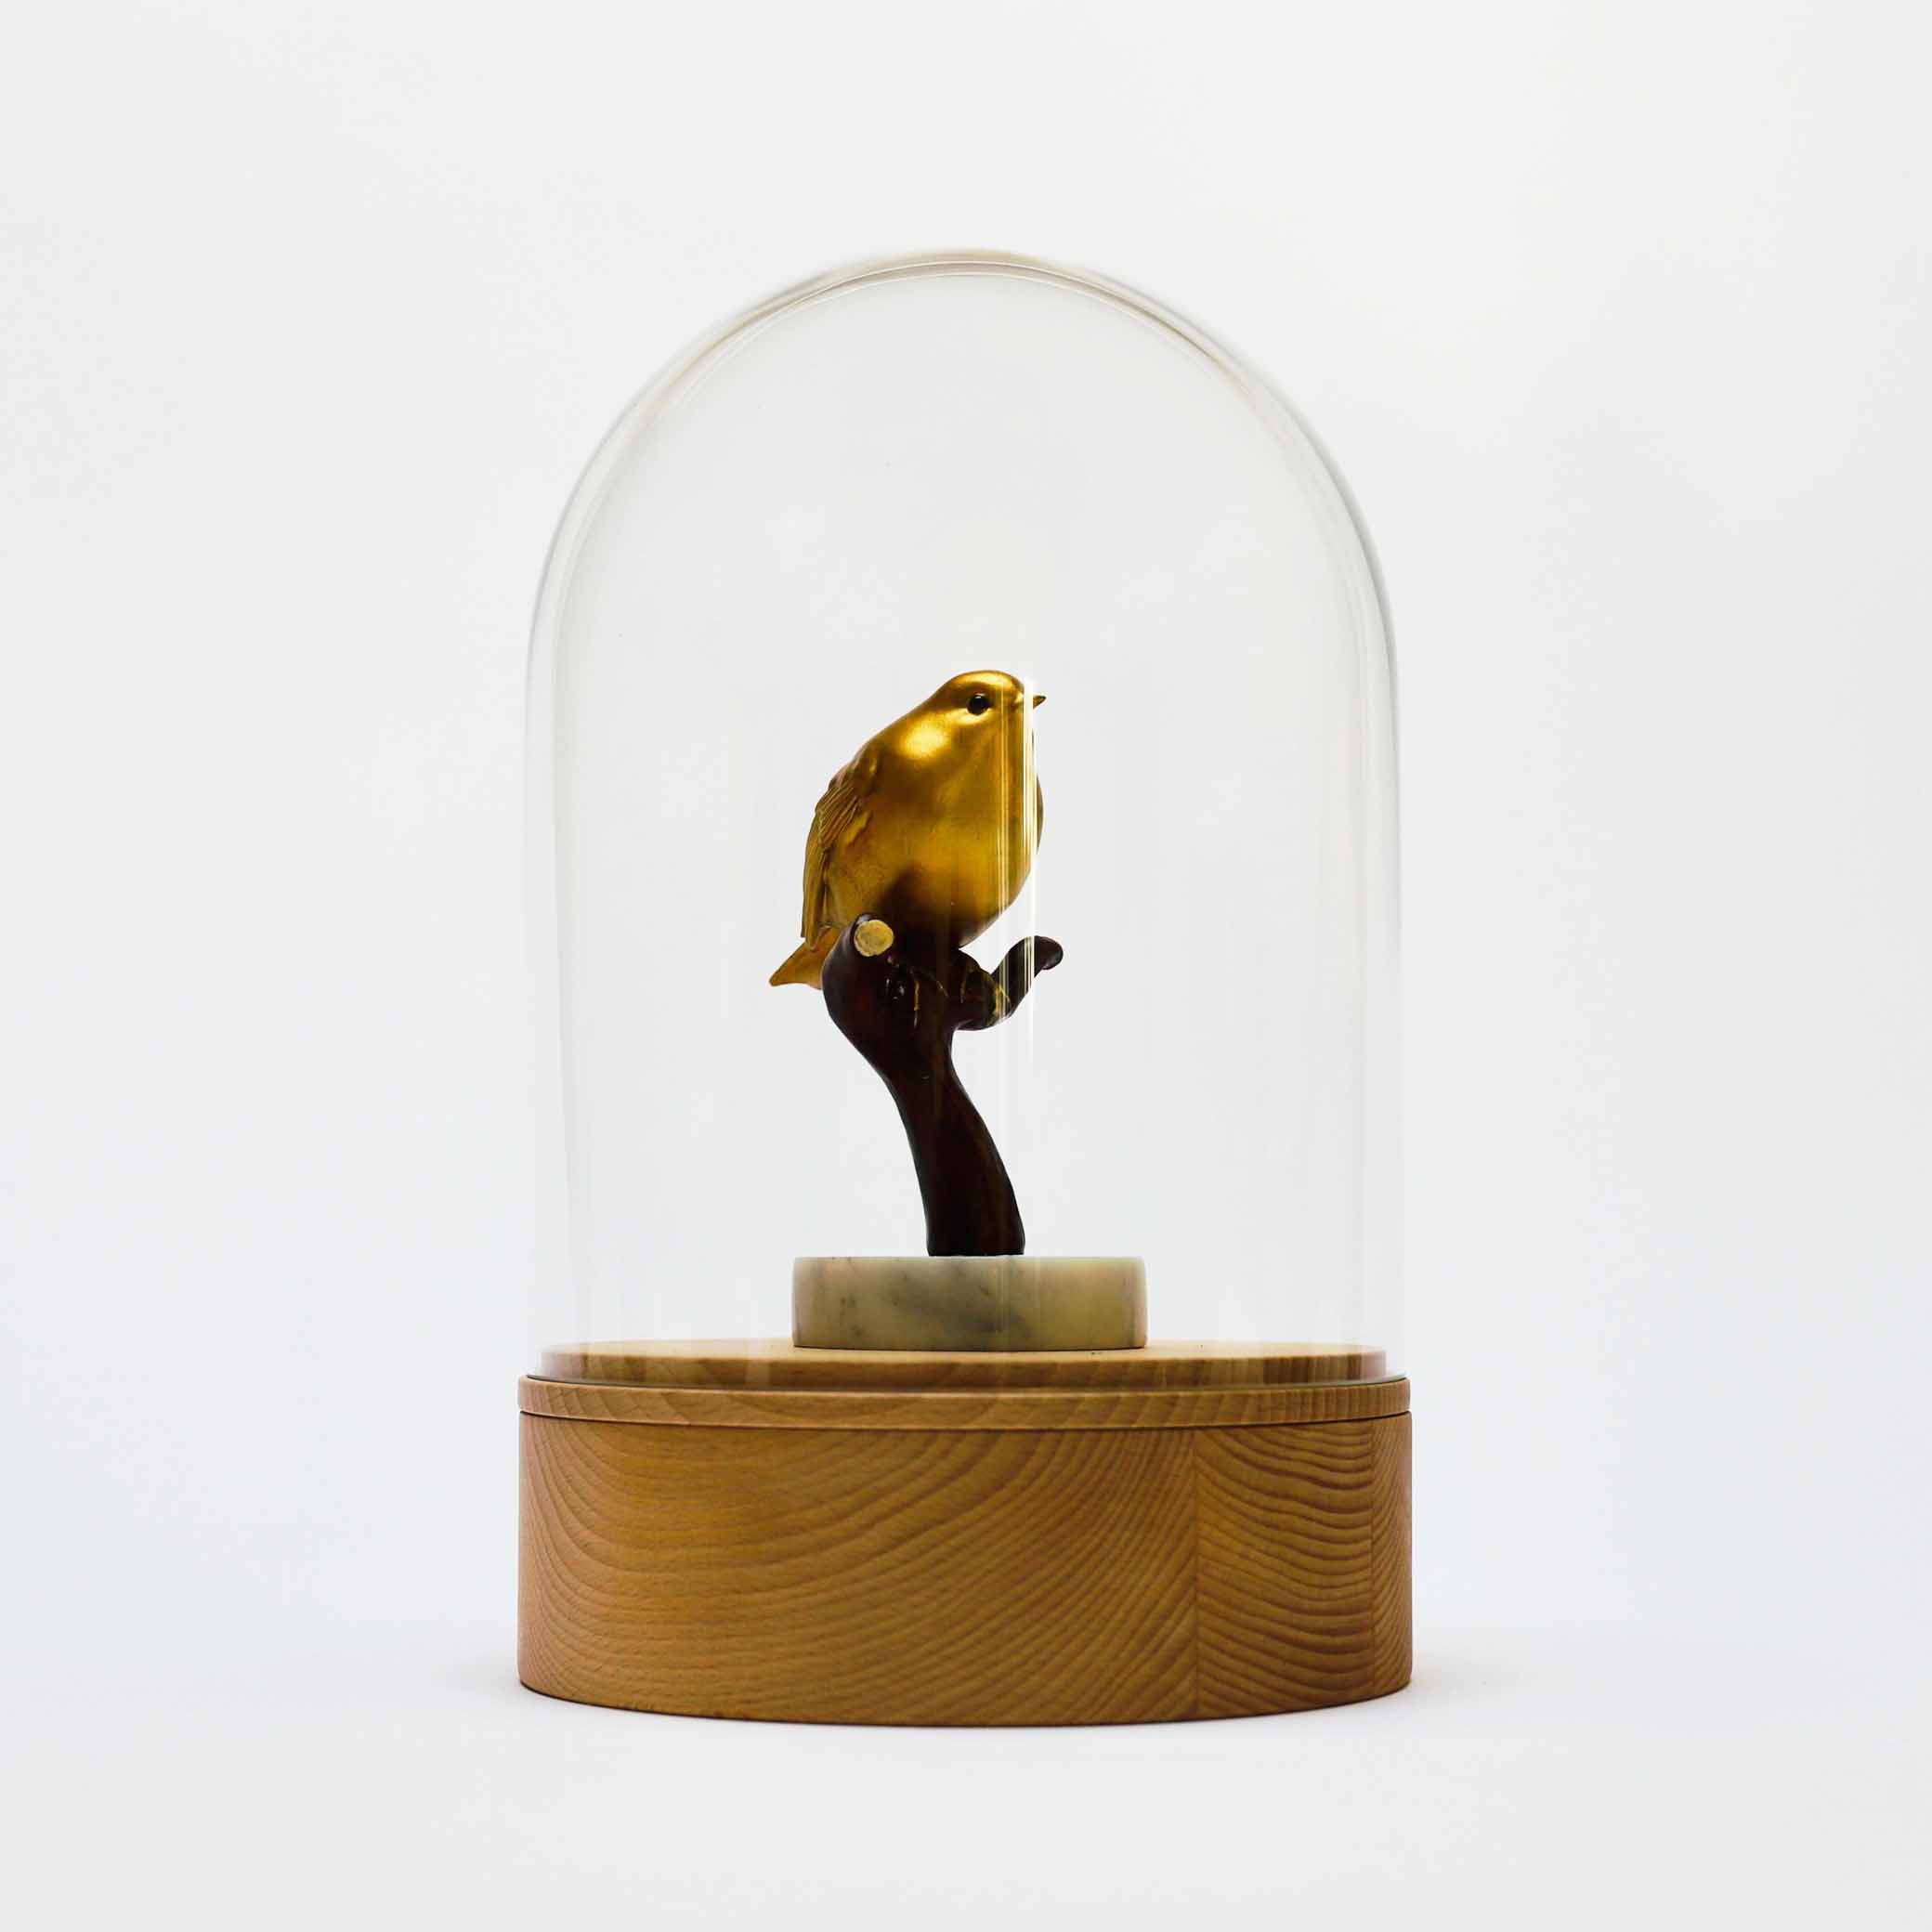 Houten urn met glazen stolp en gouden roodborstje